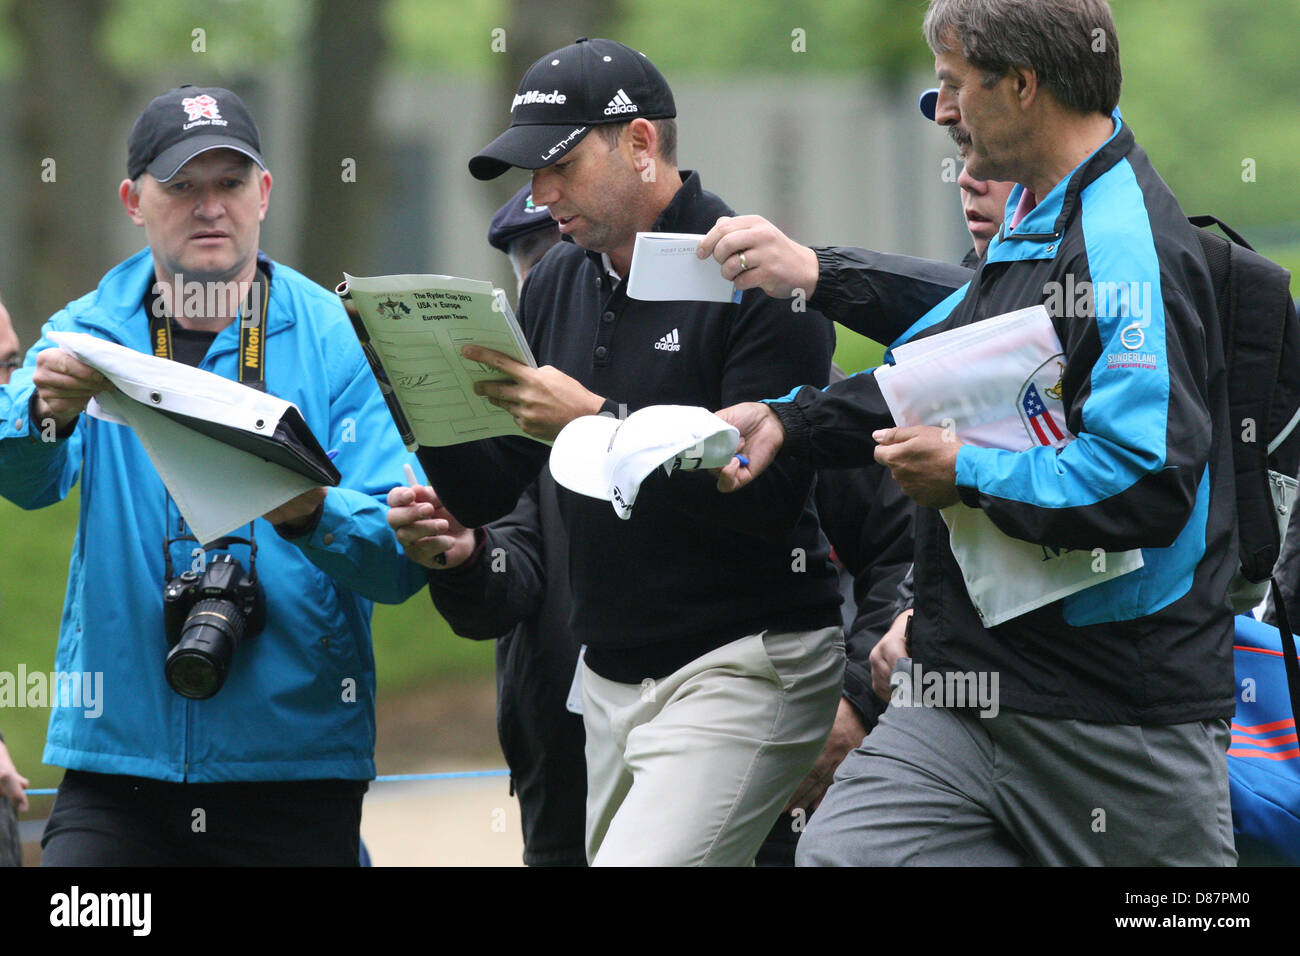 21.05.2013 Wentworth, Inghilterra. Sergio Garcia durante la pratica davanti alla BMW PGA Championships. Foto Stock